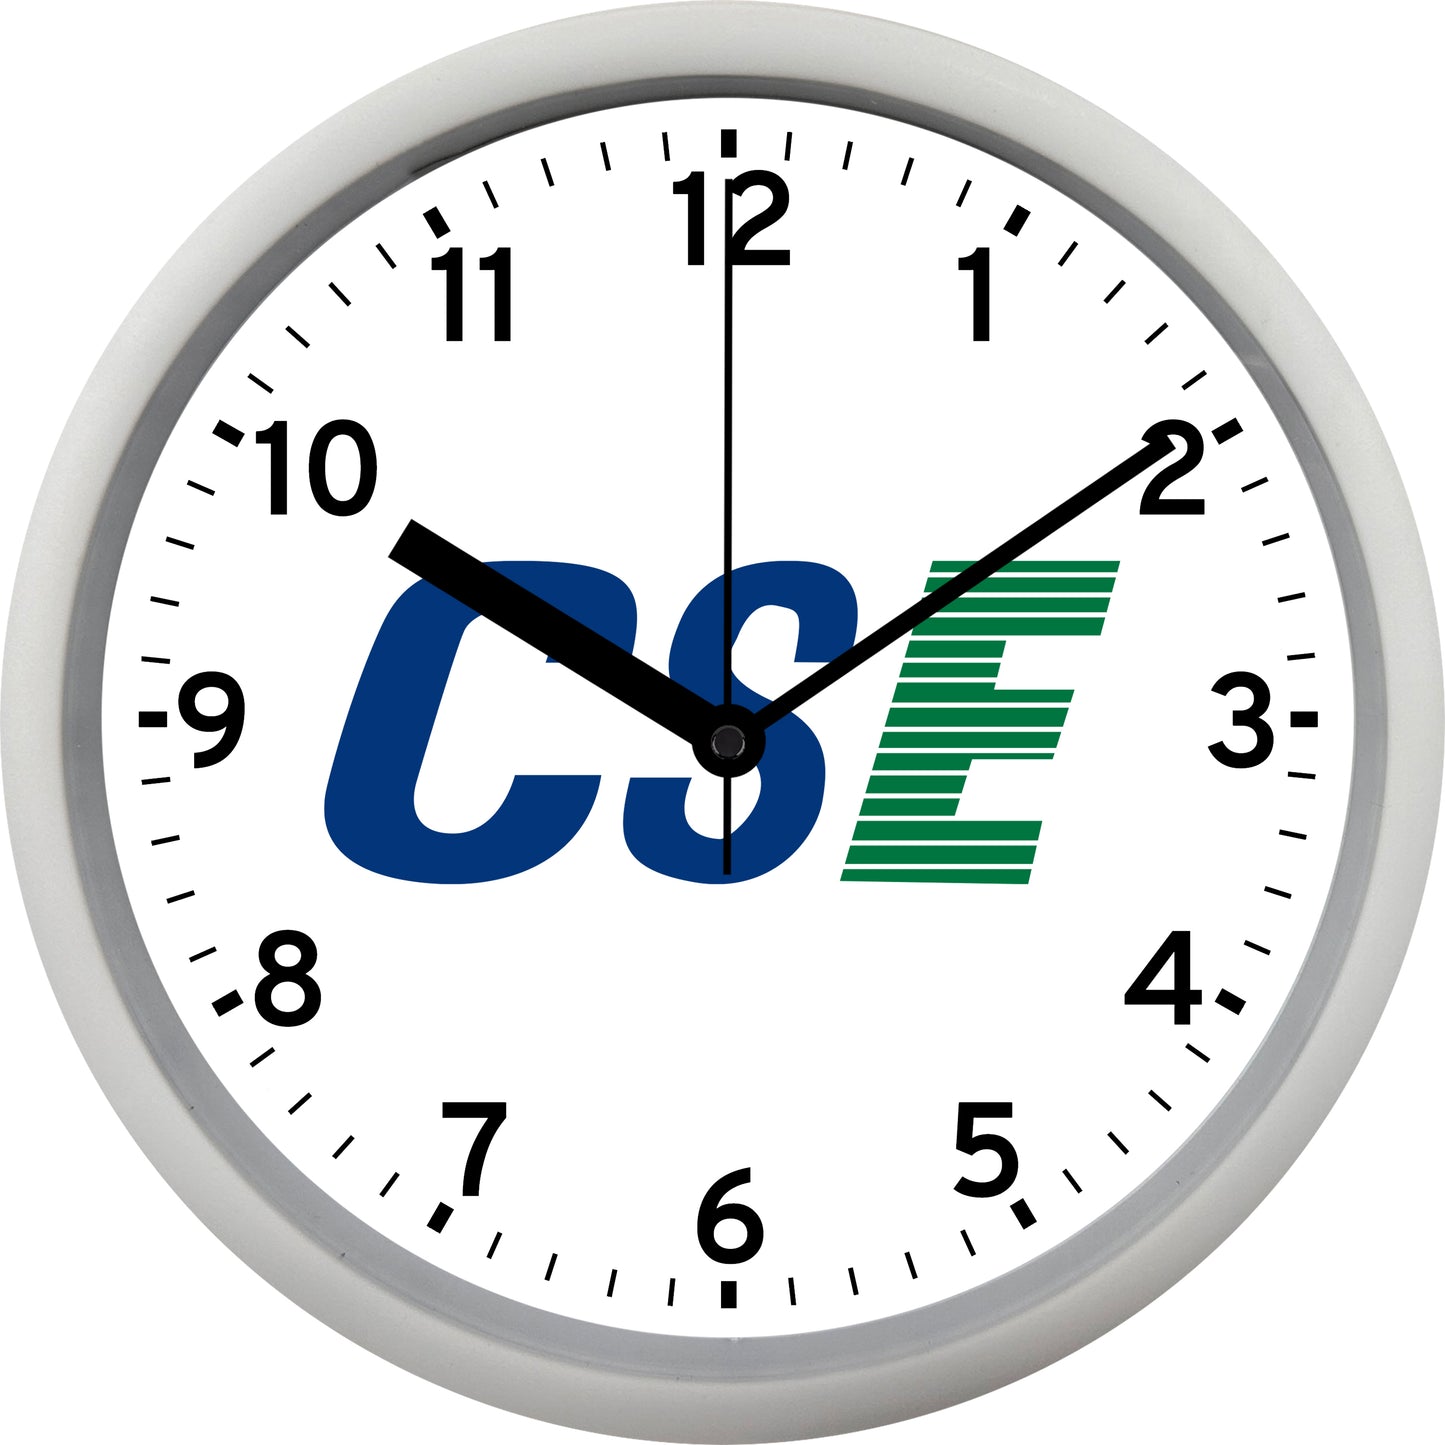 Con-Way Southern Express "CSE" Wall Clock